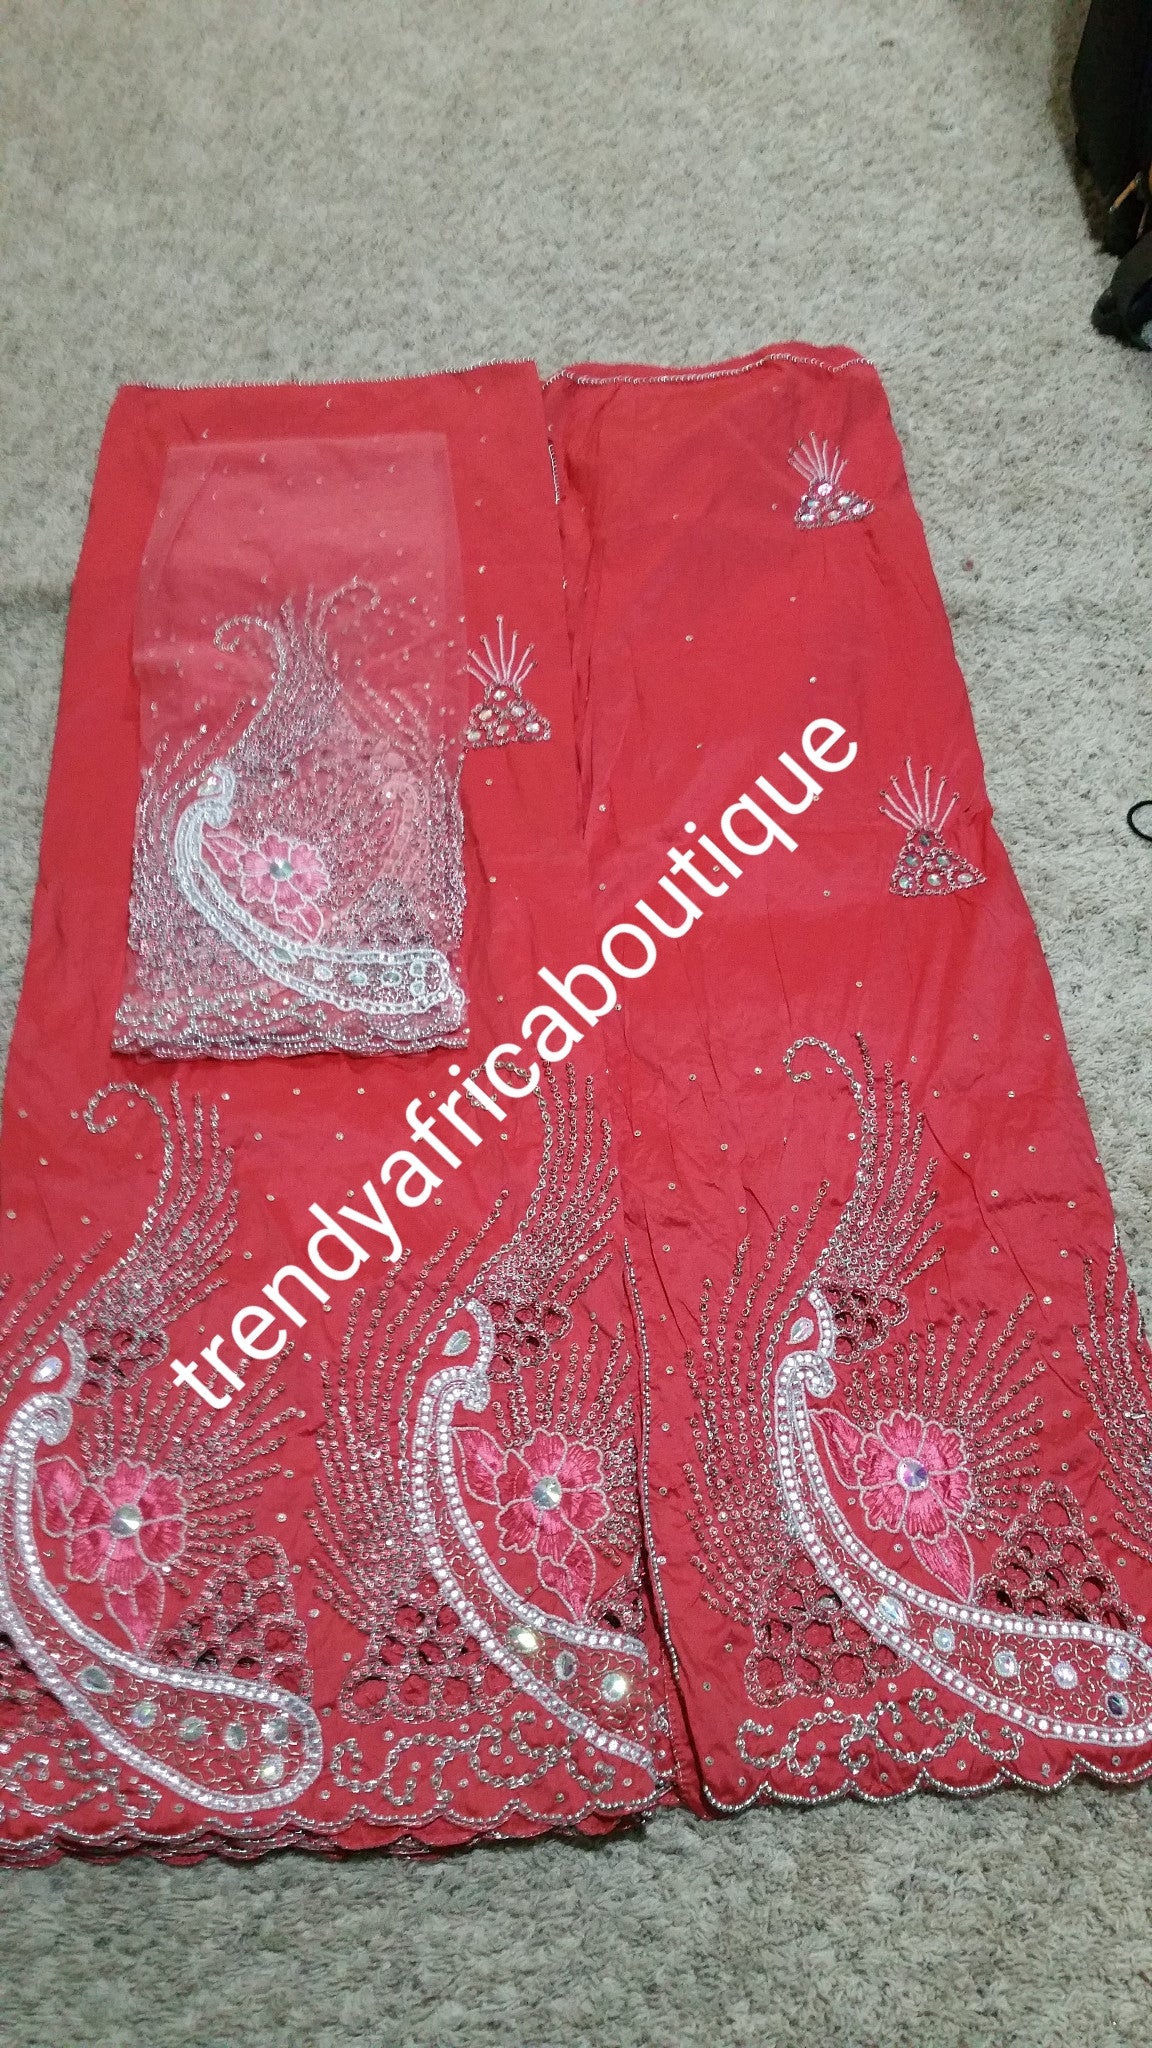 Ausverkauf: Sweet Coral Nigerian Hand Stoned George Wrapper mit passender Bluse. Korallenfarbe. Verkauft als Set bestehend aus 5 Yards + 1,8 Yards passender Bluse